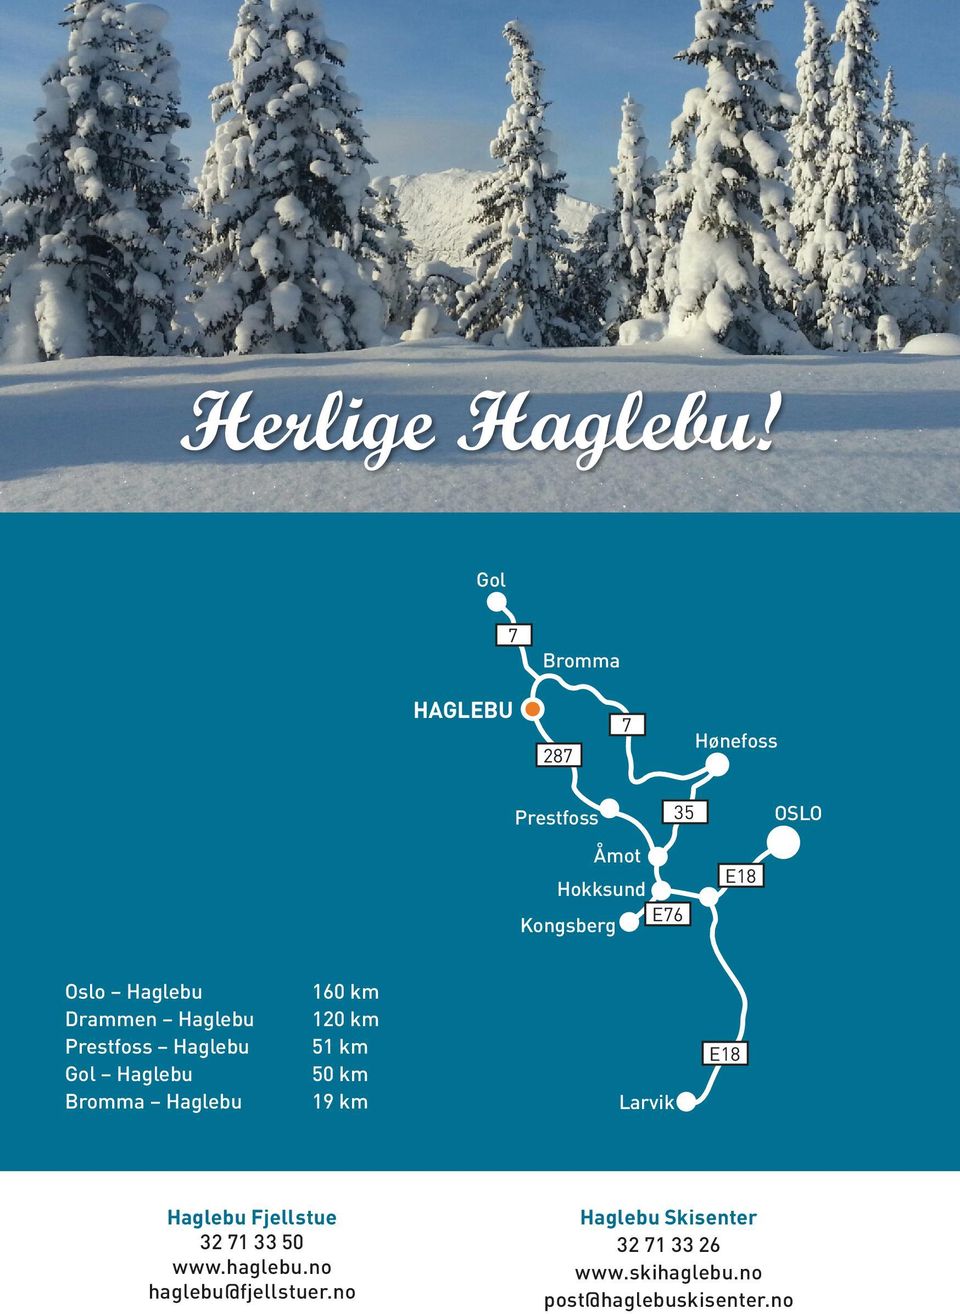 Drammen Haglebu Prestfoss Haglebu Gol Haglebu Bromma Haglebu 160 km 120 km 51 km 50